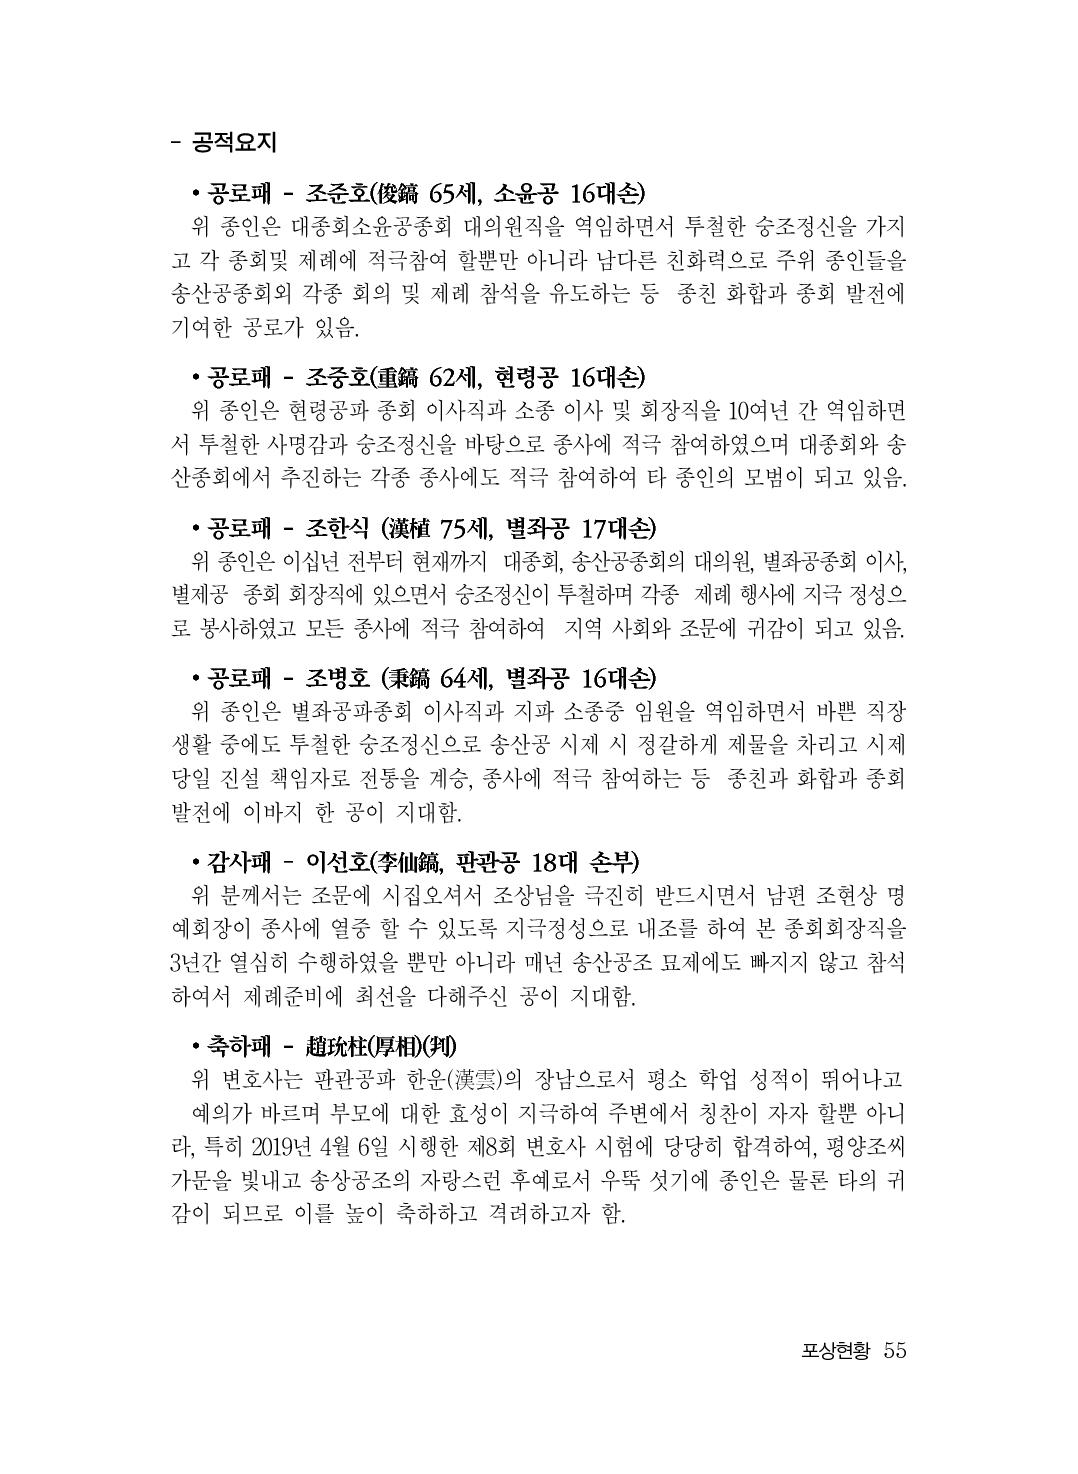 (전체) 송산종보(27호)(최종)_56.jpg